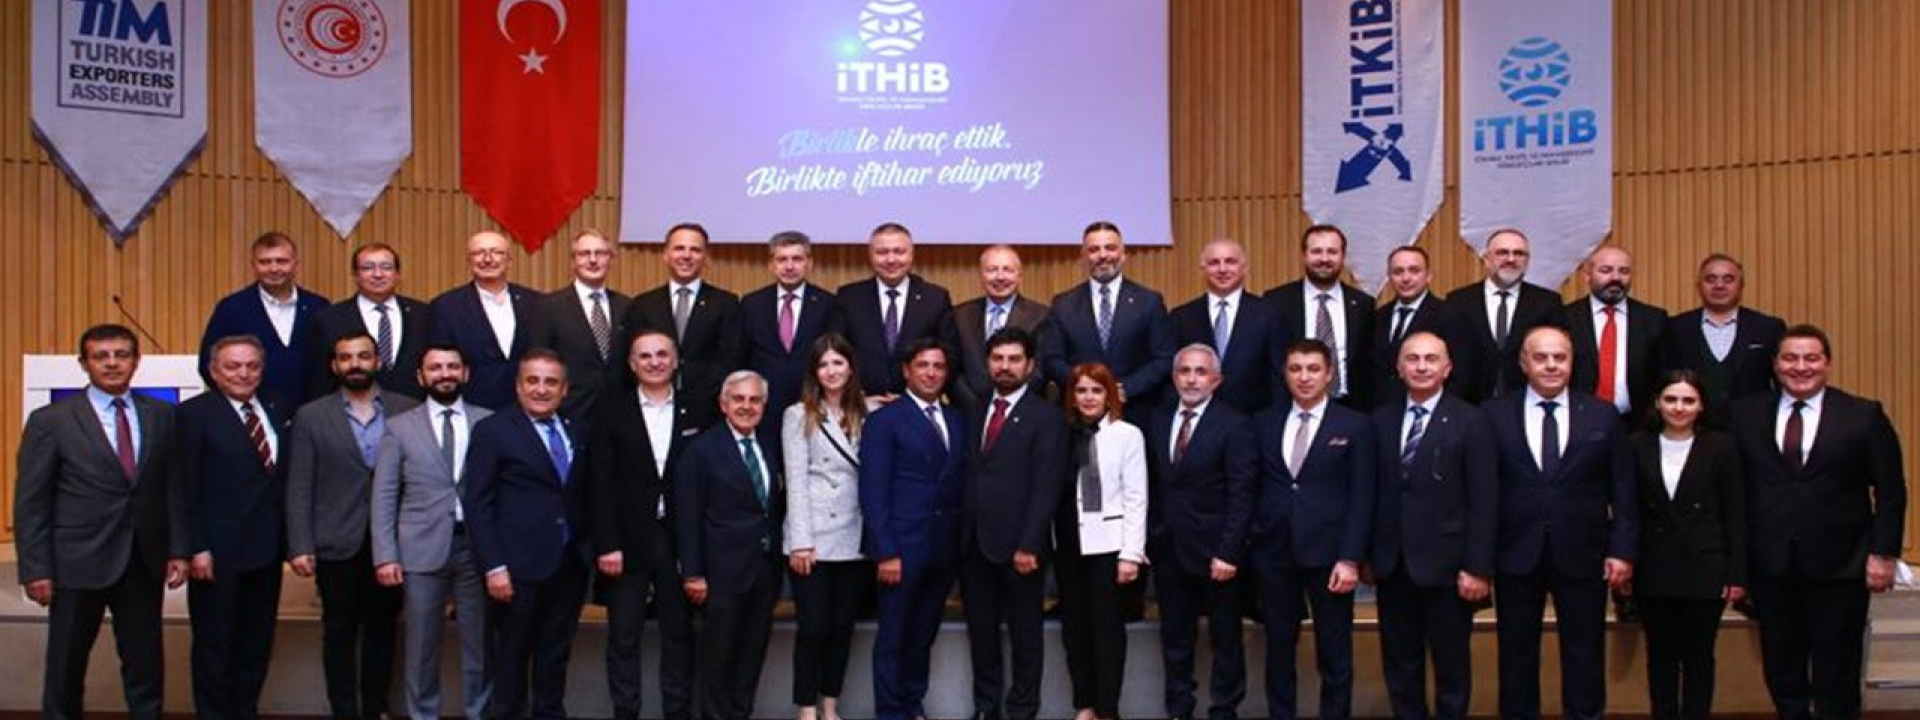 İTHİB Başkanı Ahmet Öksüz TGRT Haber'de Sektörümüze Dair Değerlendirmelerde Bulundu